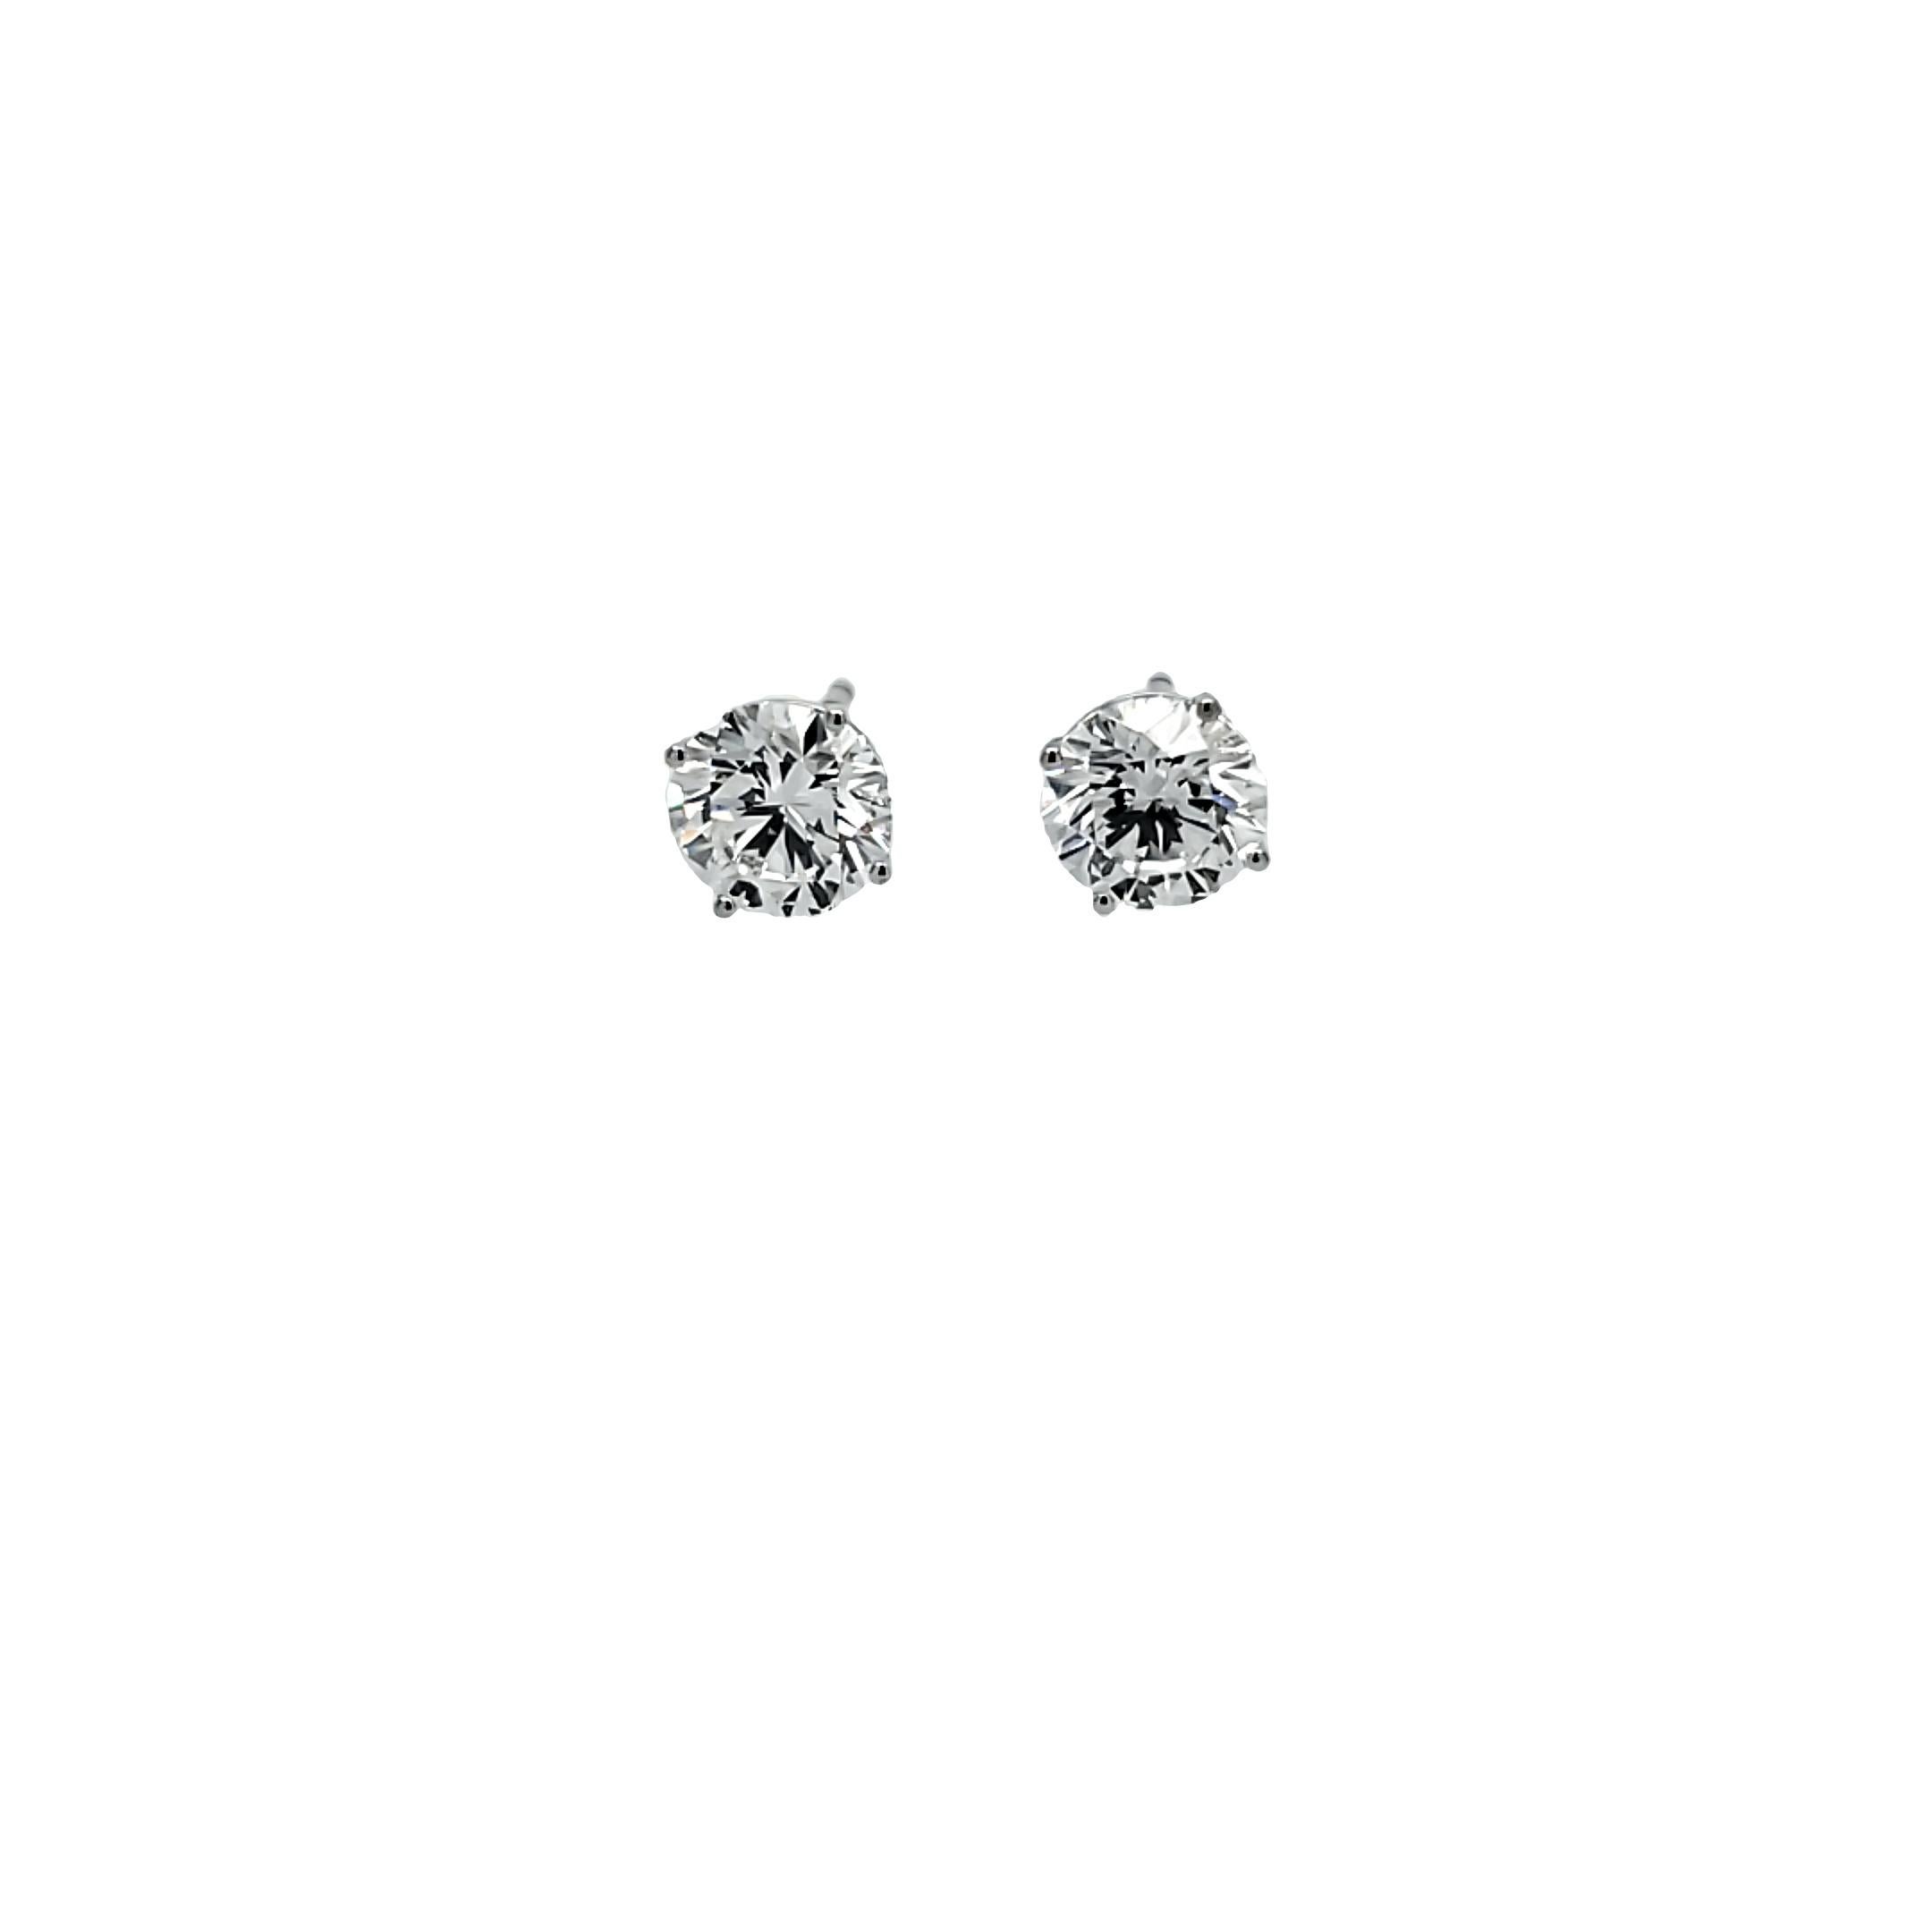 Rosenberg Diamonds and Co. 4,02 Karat Gesamtgewicht E Farbe VVS2 Klarheit dreifach ausgezeichnet GIA zertifiziert ist das perfekte Paar von Diamanten Ohrstecker. Wir haben eine große Auswahl an GIA-zertifizierten Ohrsteckern von 2 Karat